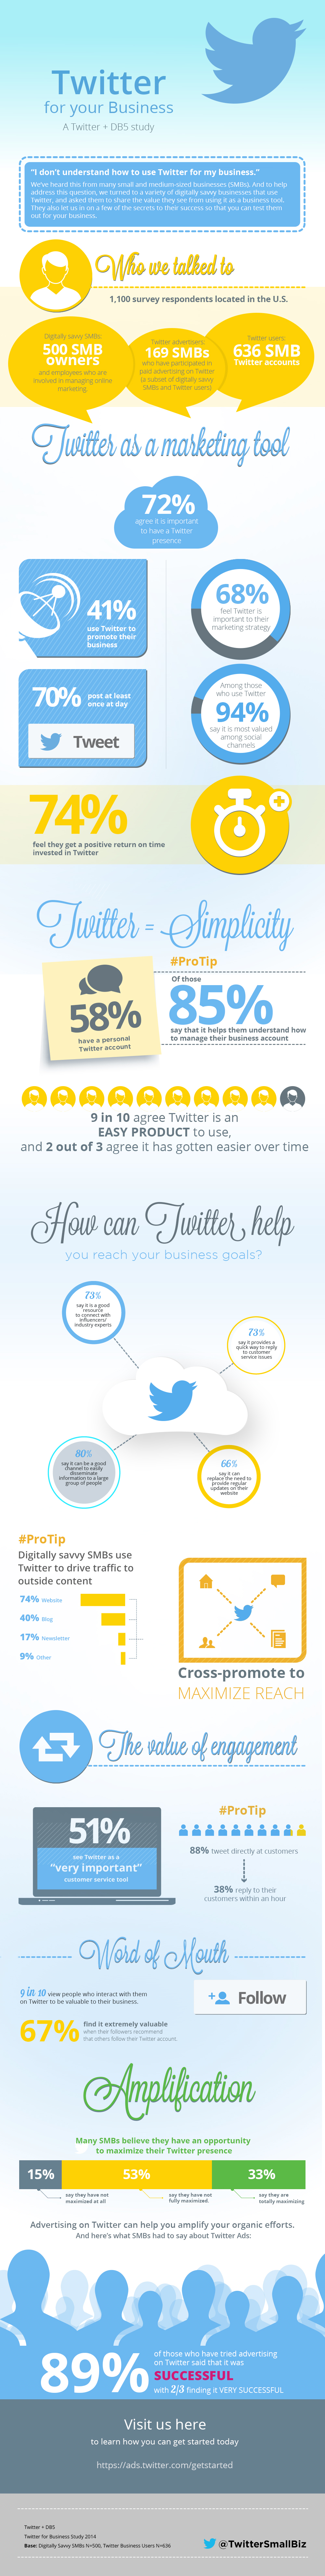 Twitter for your business onderzoek - Tips van ondernemers om Twitter zakelijk in te zetten